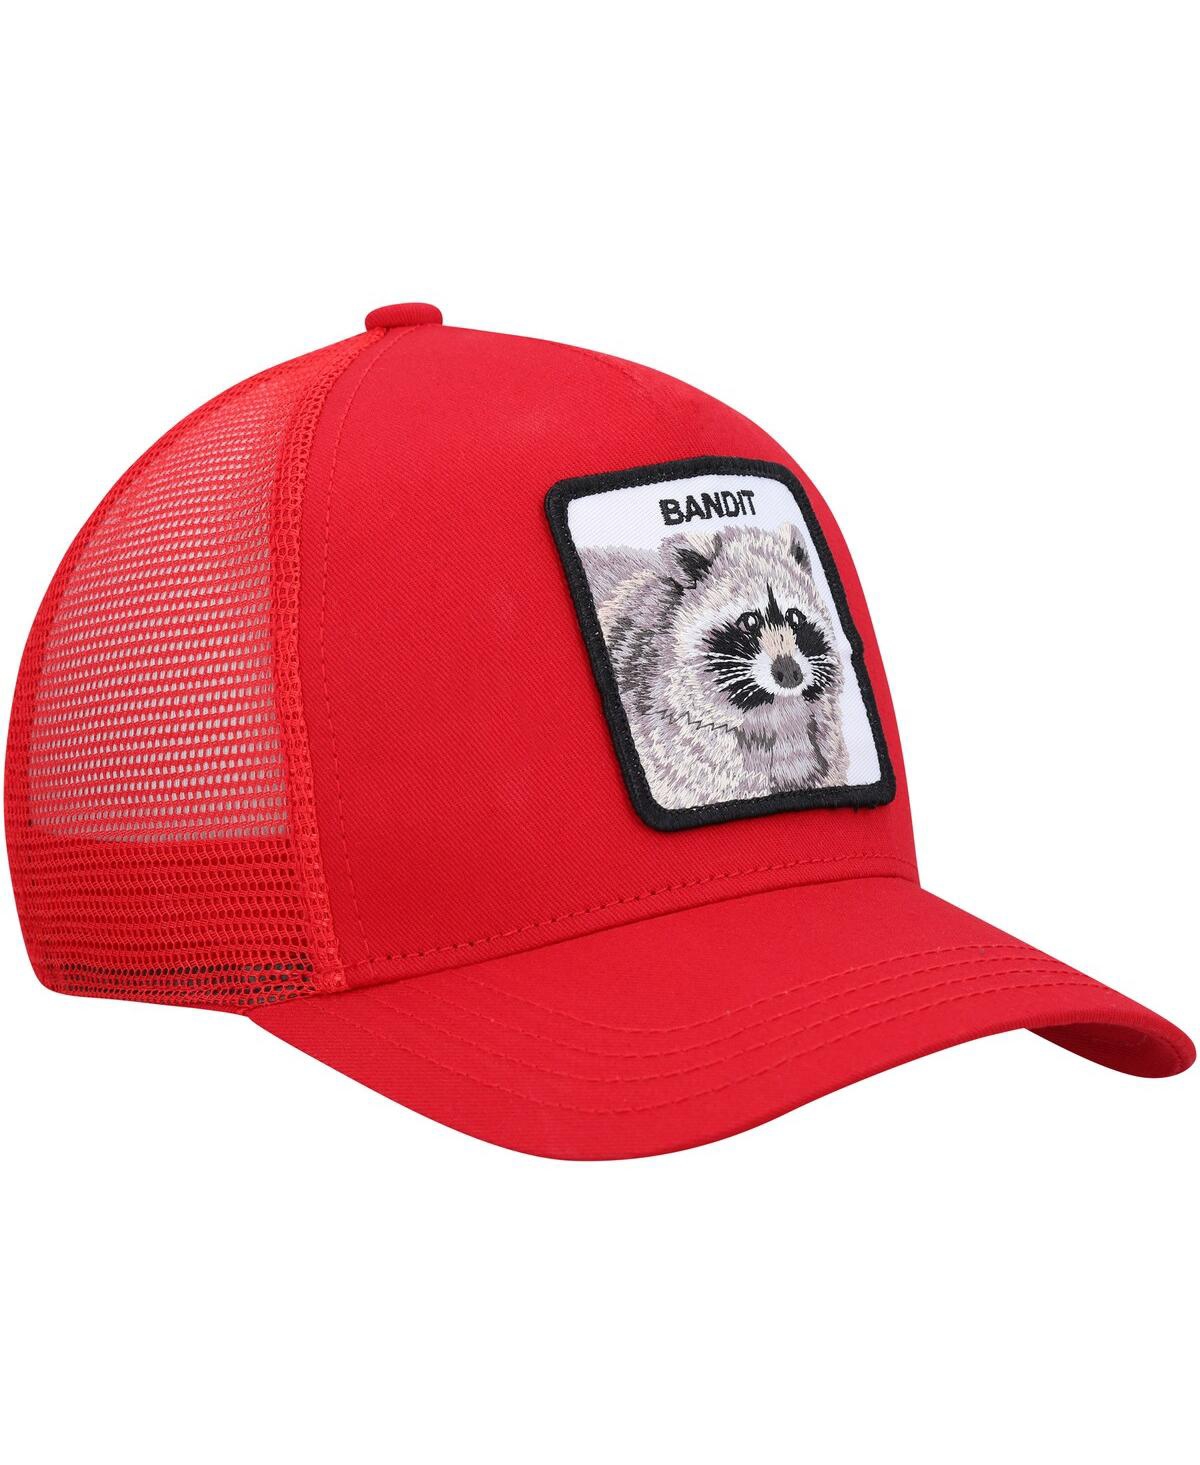 Shop Goorin Bros Men's . Red The Bandit Trucker Adjustable Hat